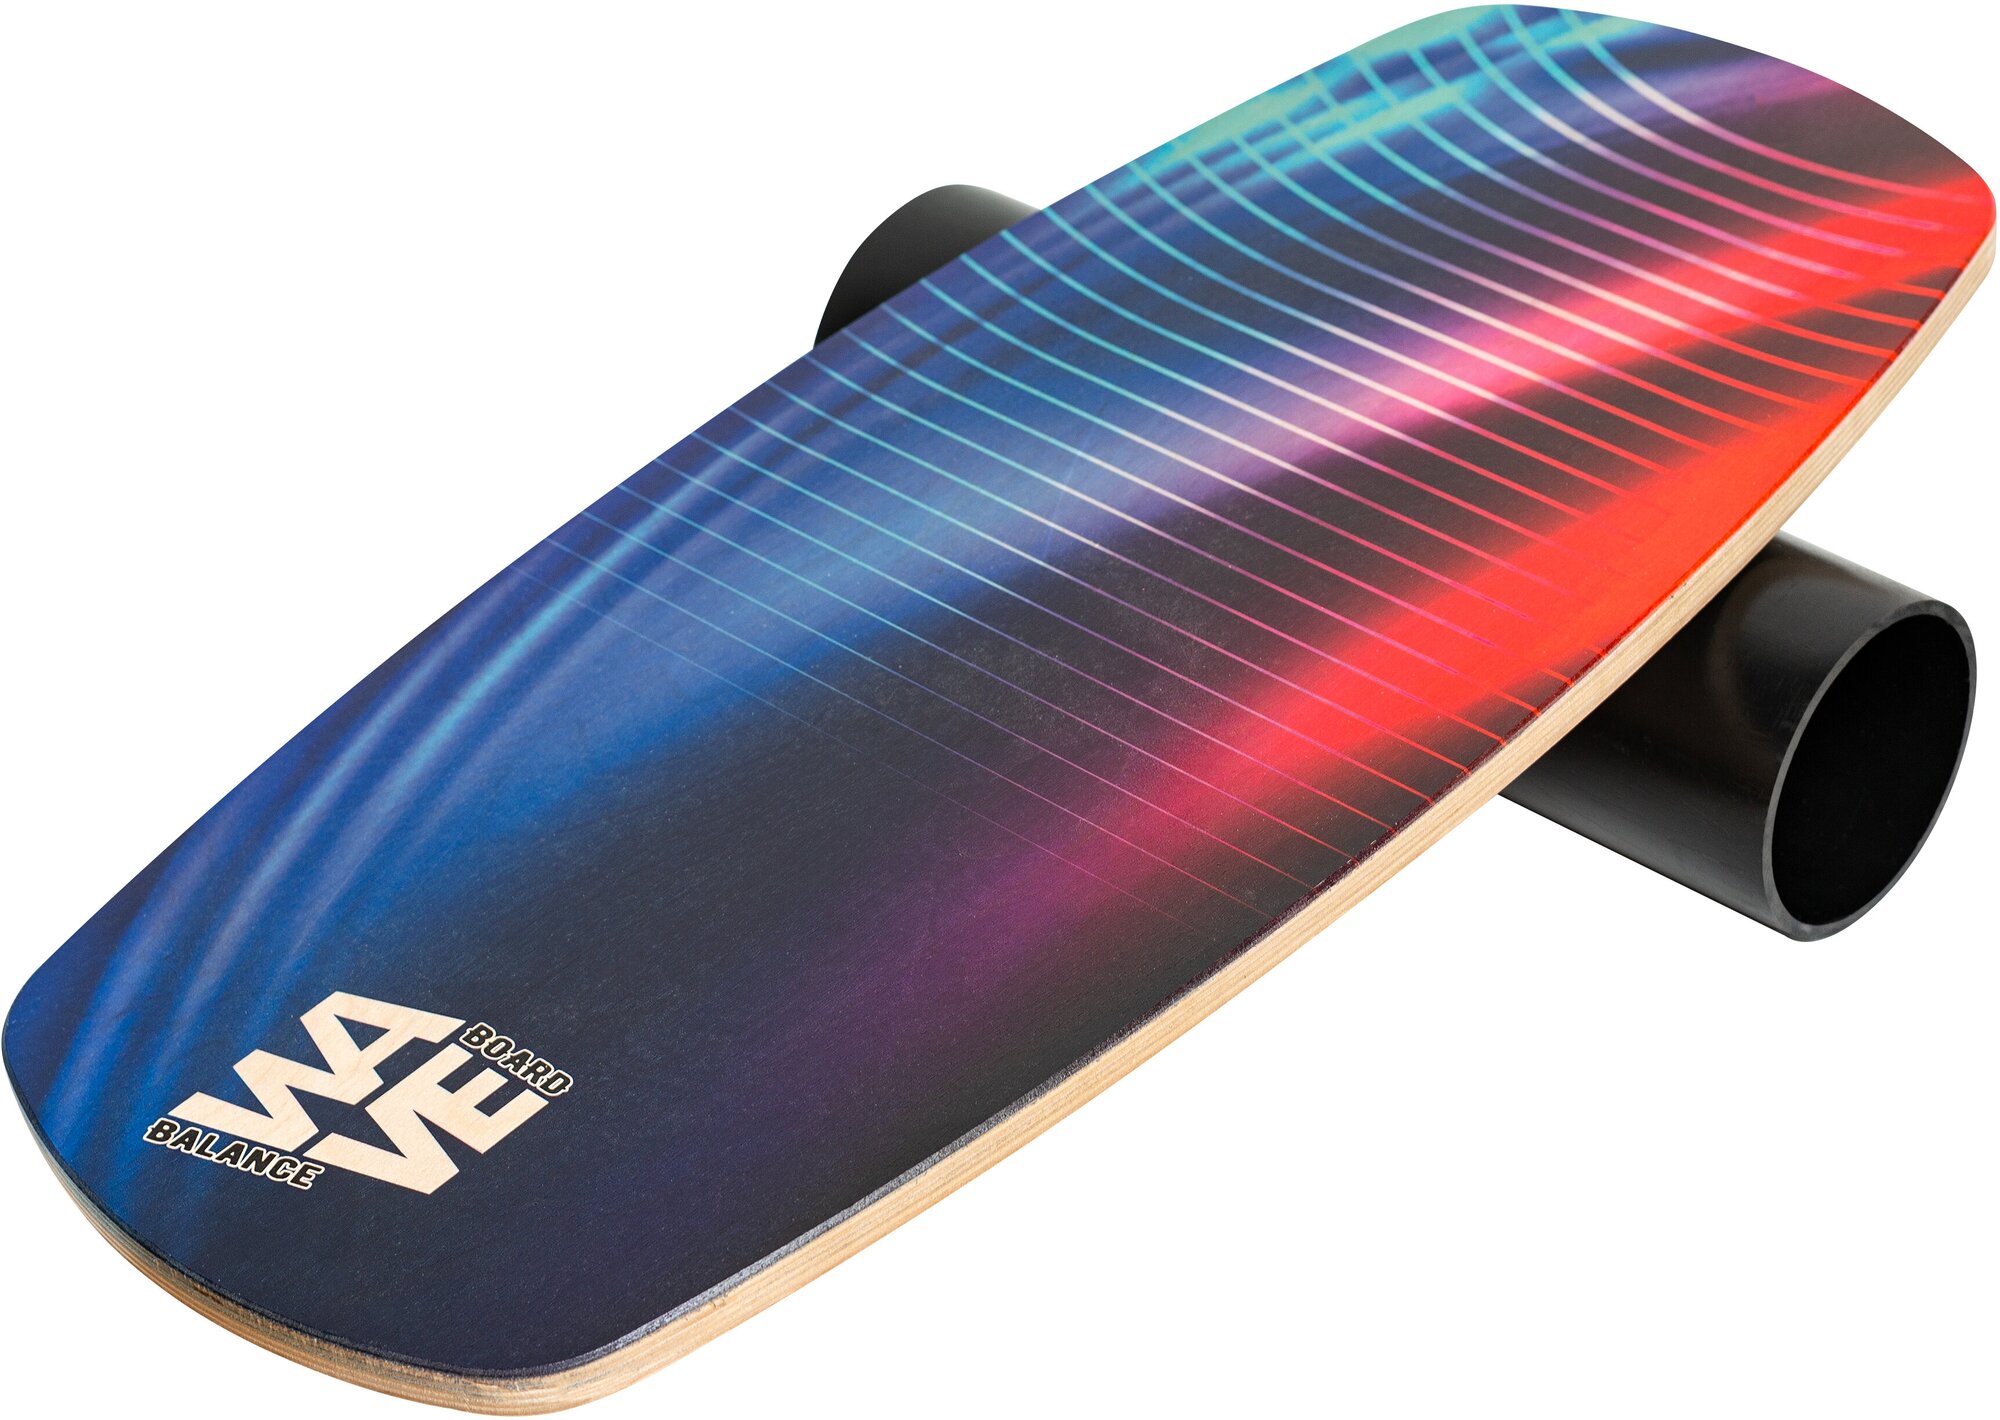 Доска балансировочная WAVE Skate + ролик + подарок